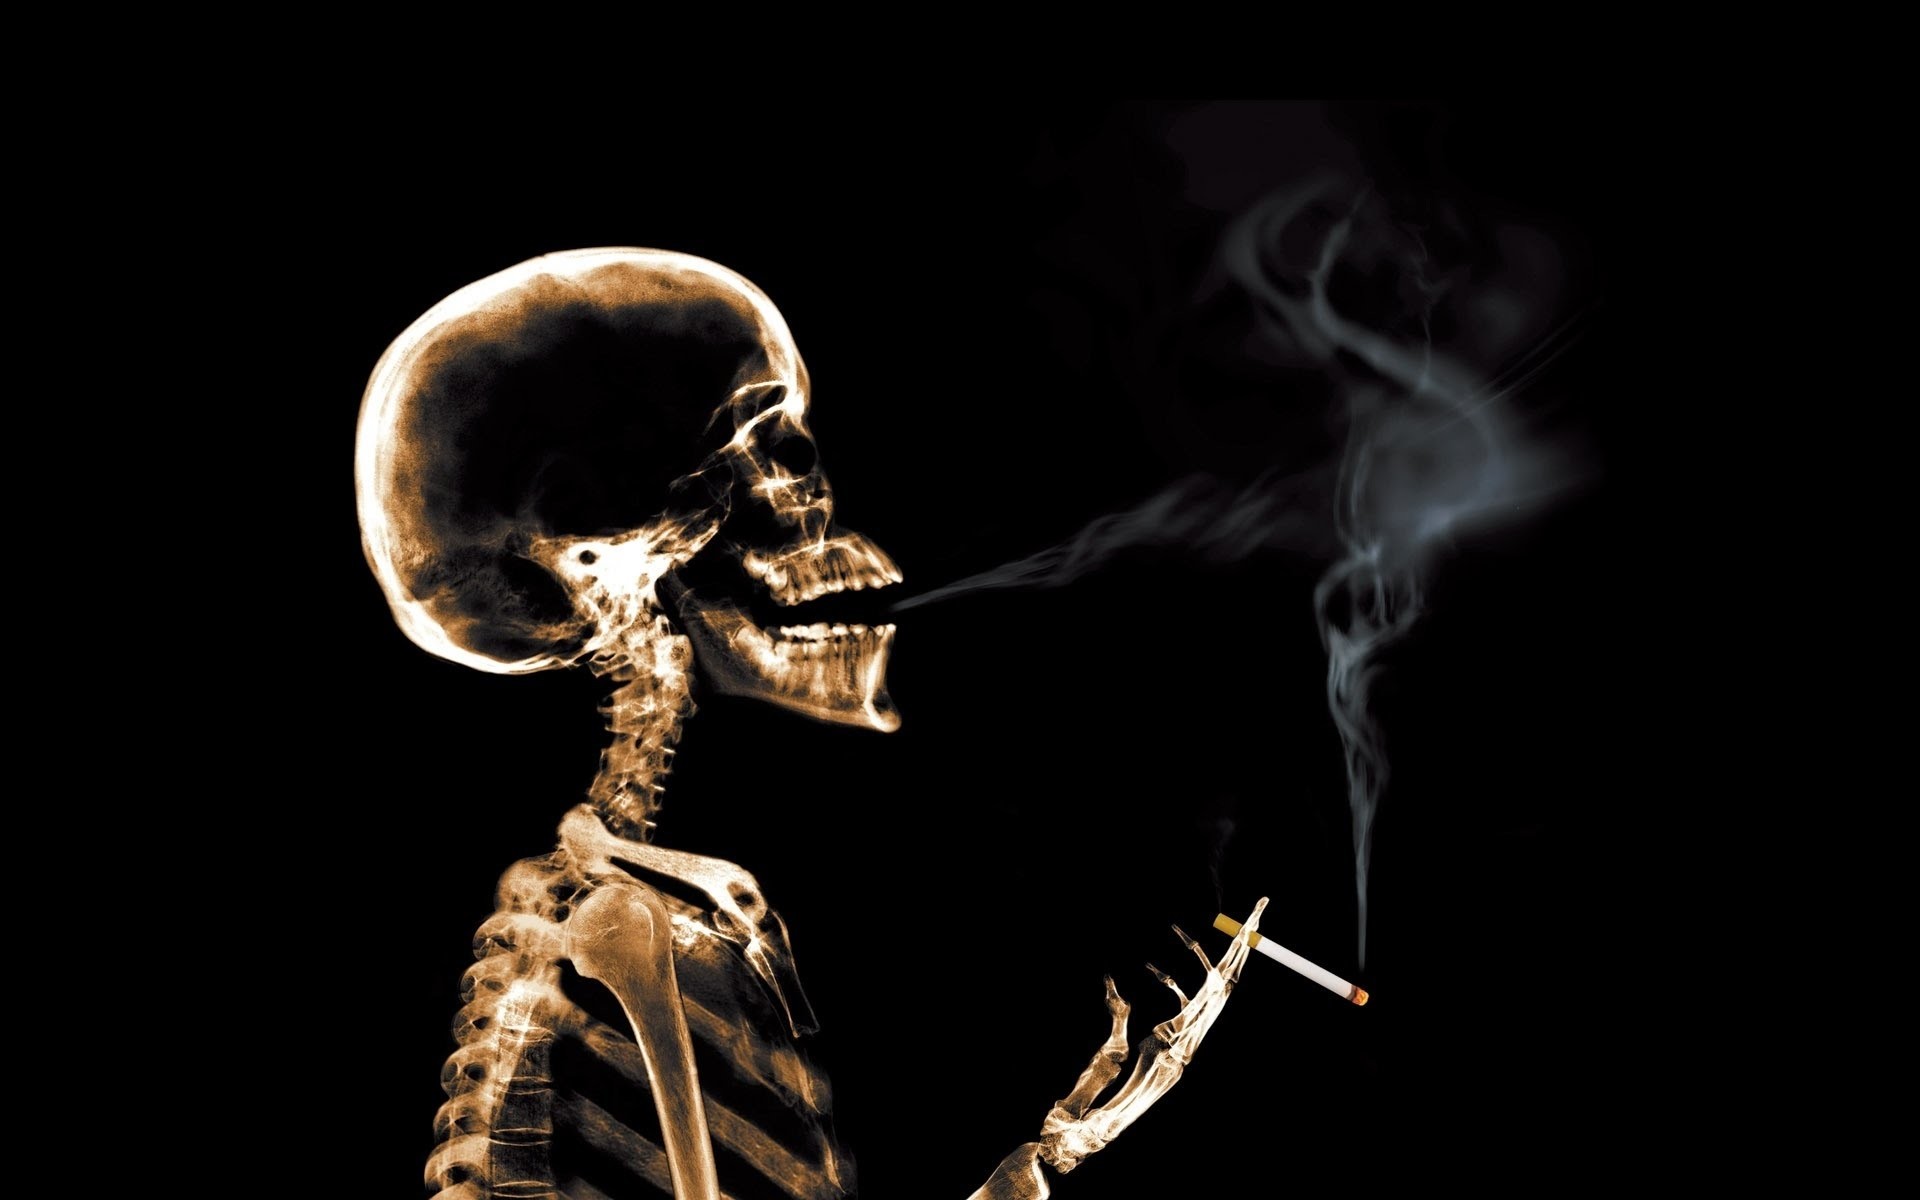 download di sfondi per fumatori,scheletro,umano,fumo,corpo umano,fotografia